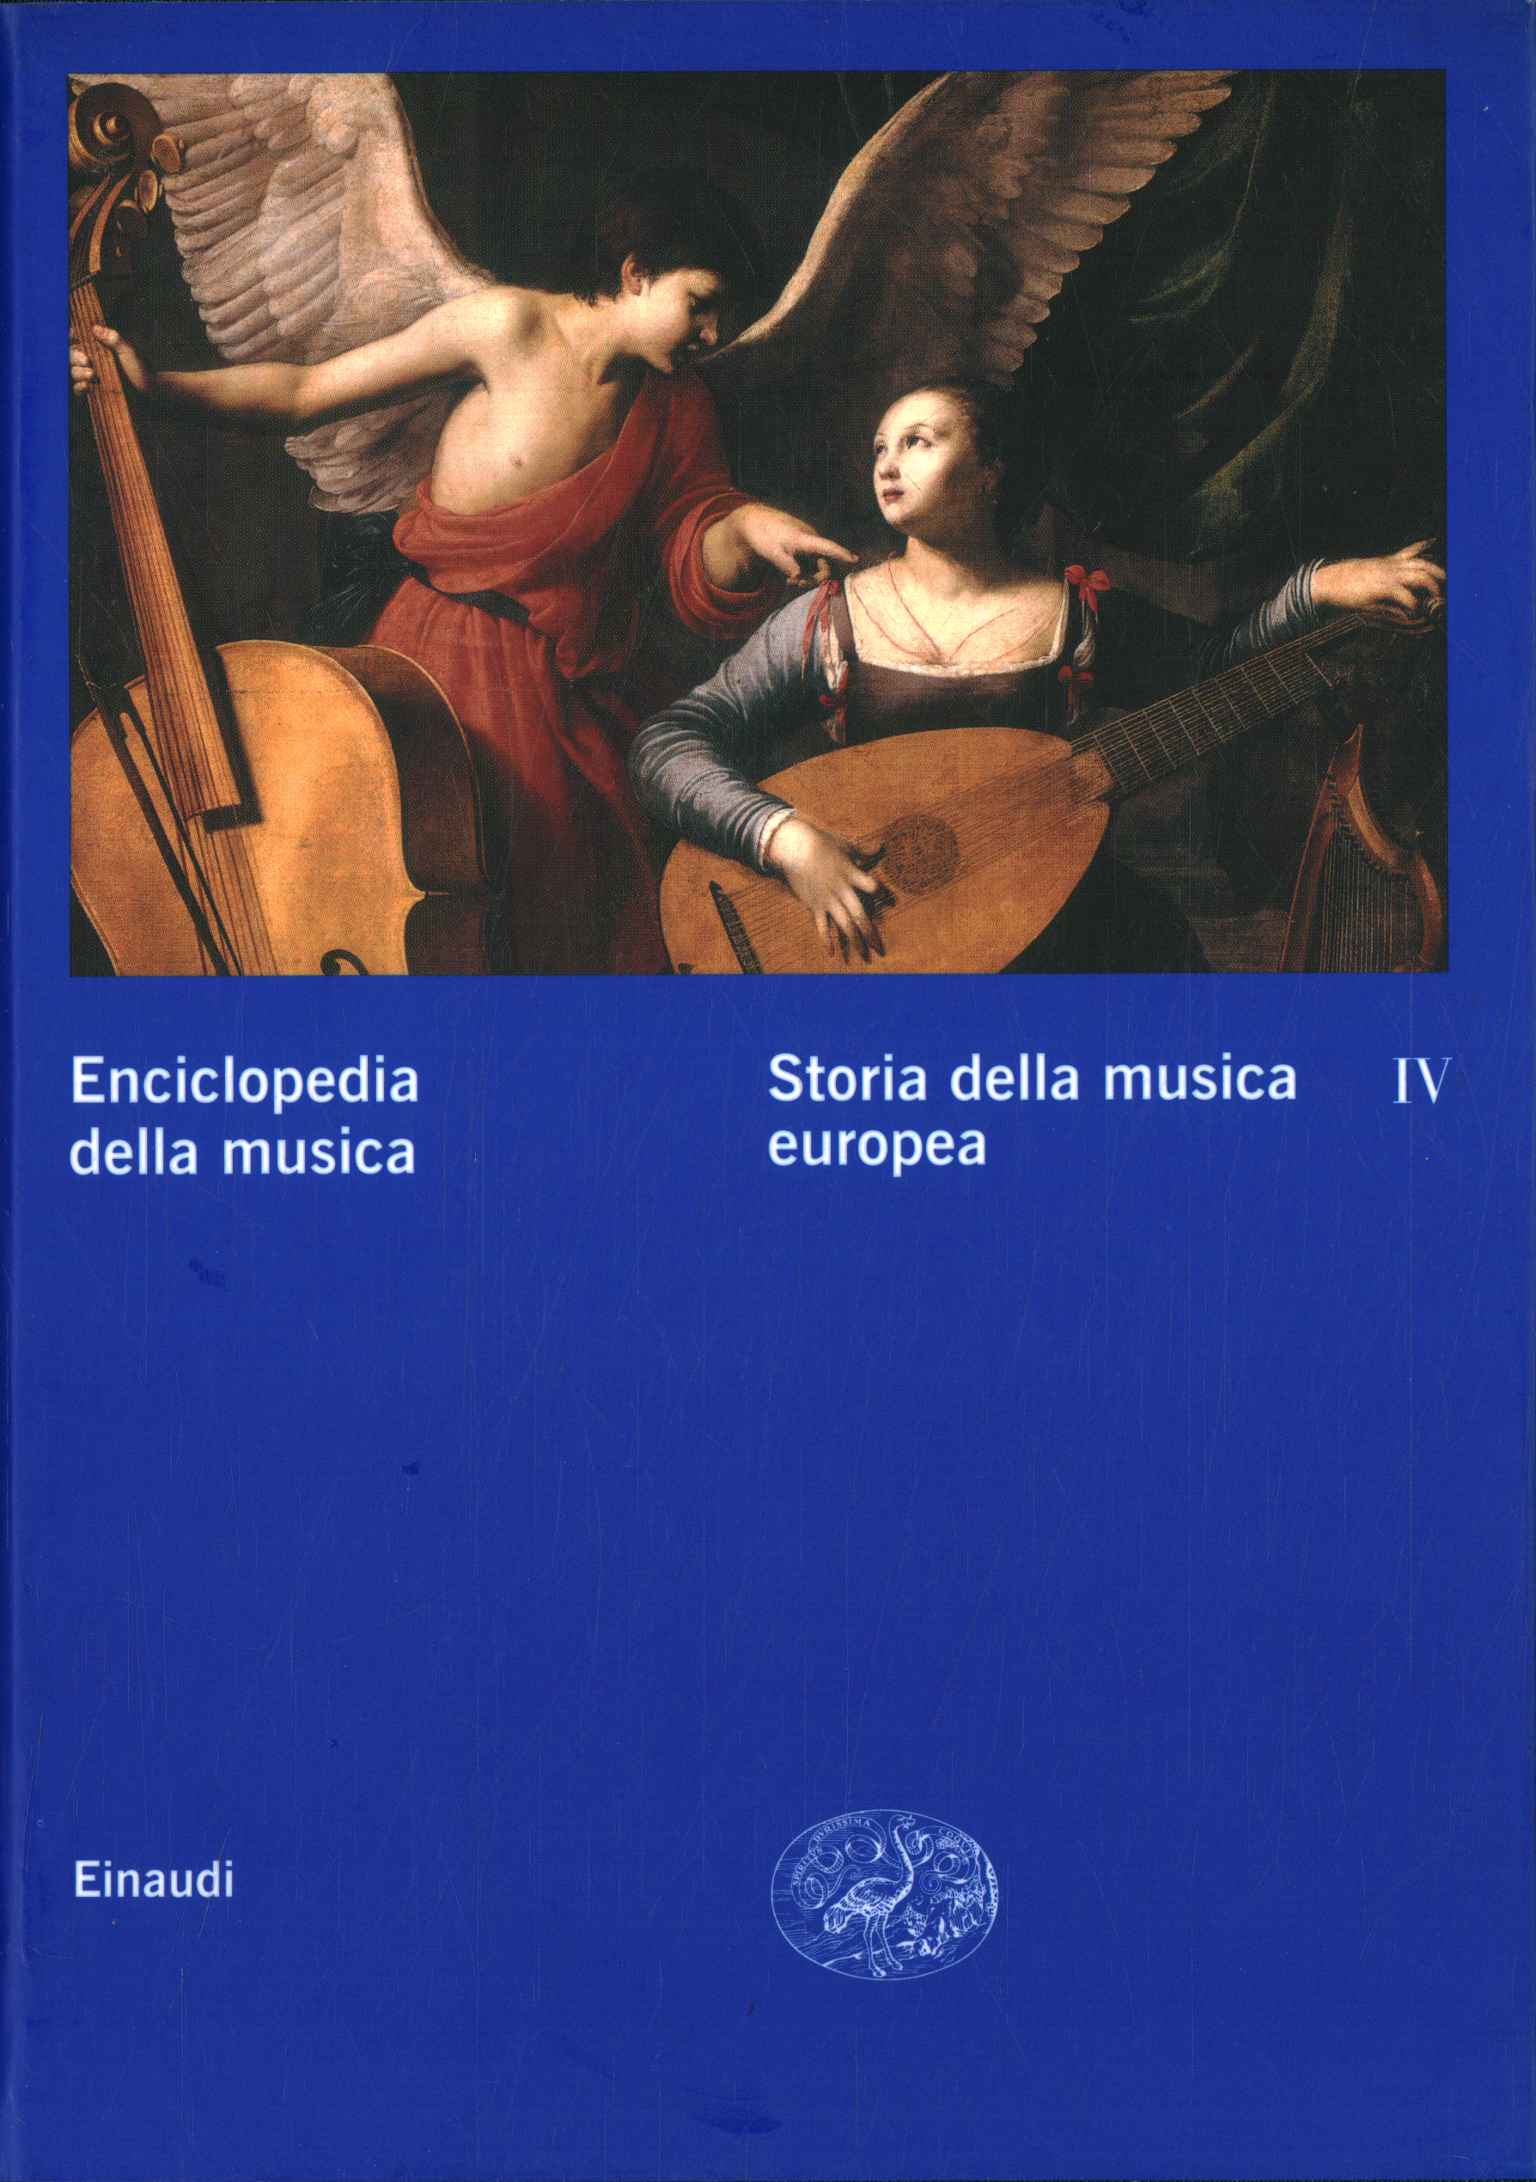 Enciclopedia della musica. Storia della